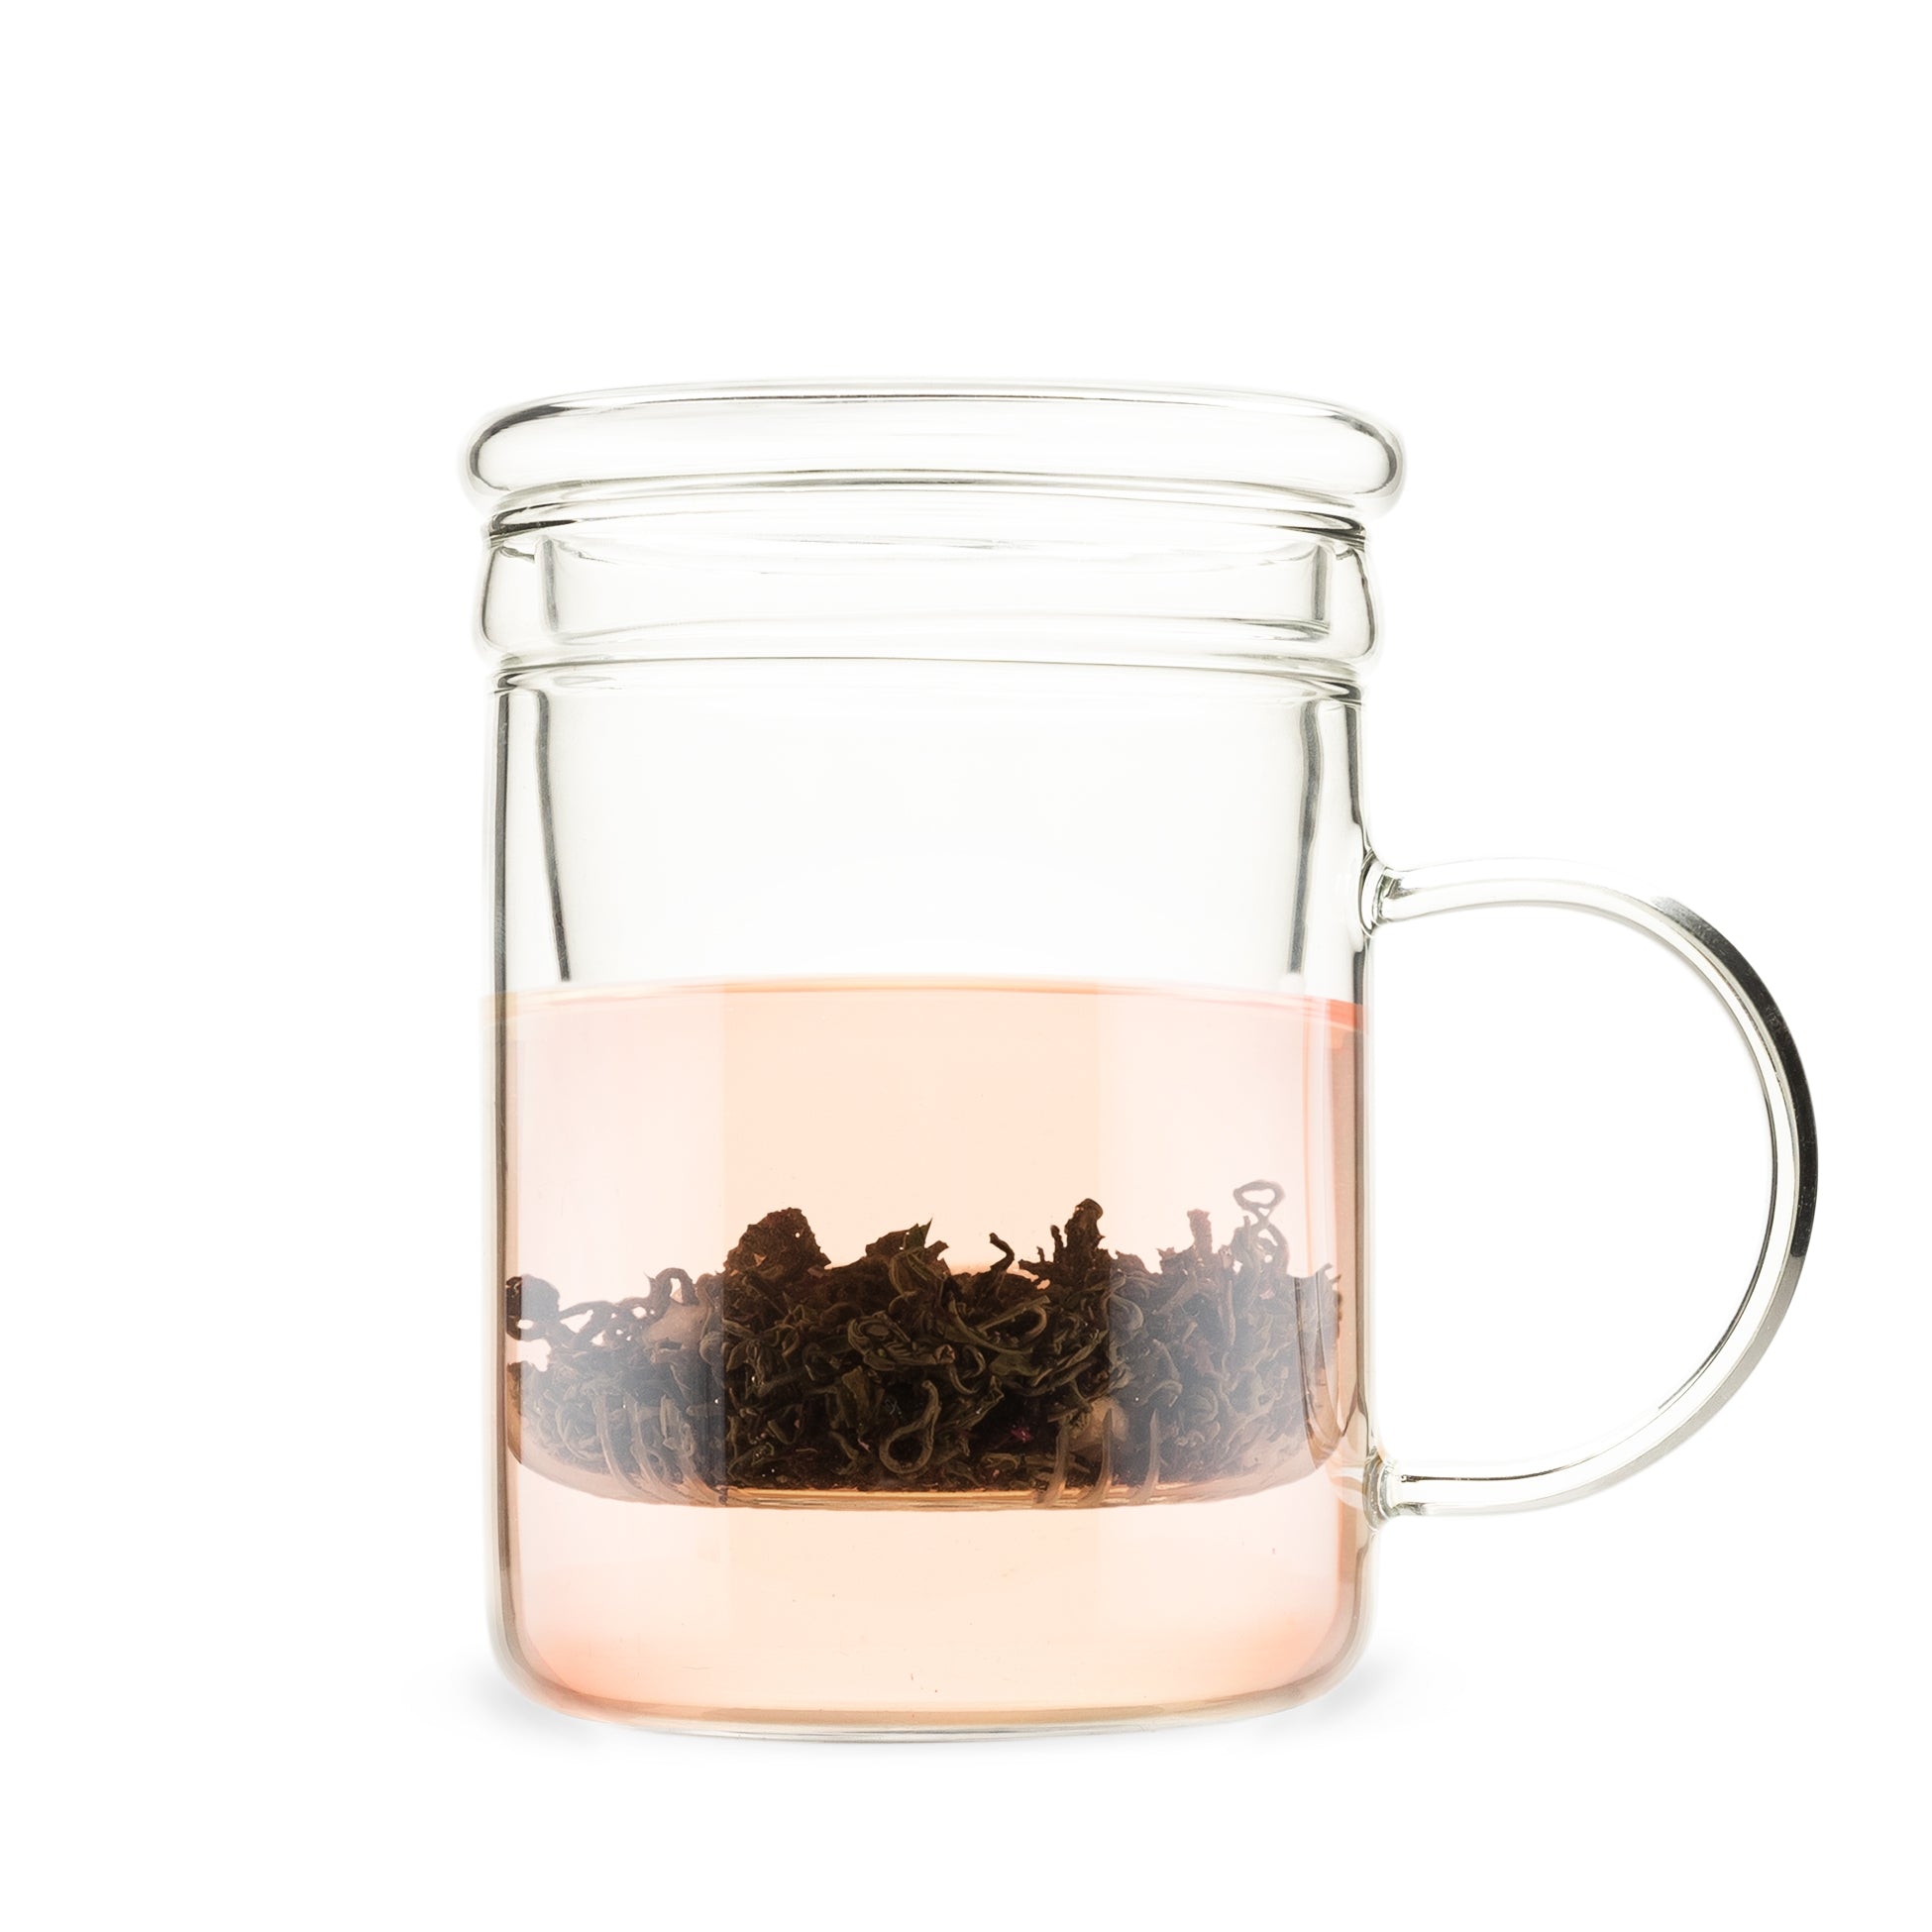 Pinky Up Blake Glass Tea Infuser Mug